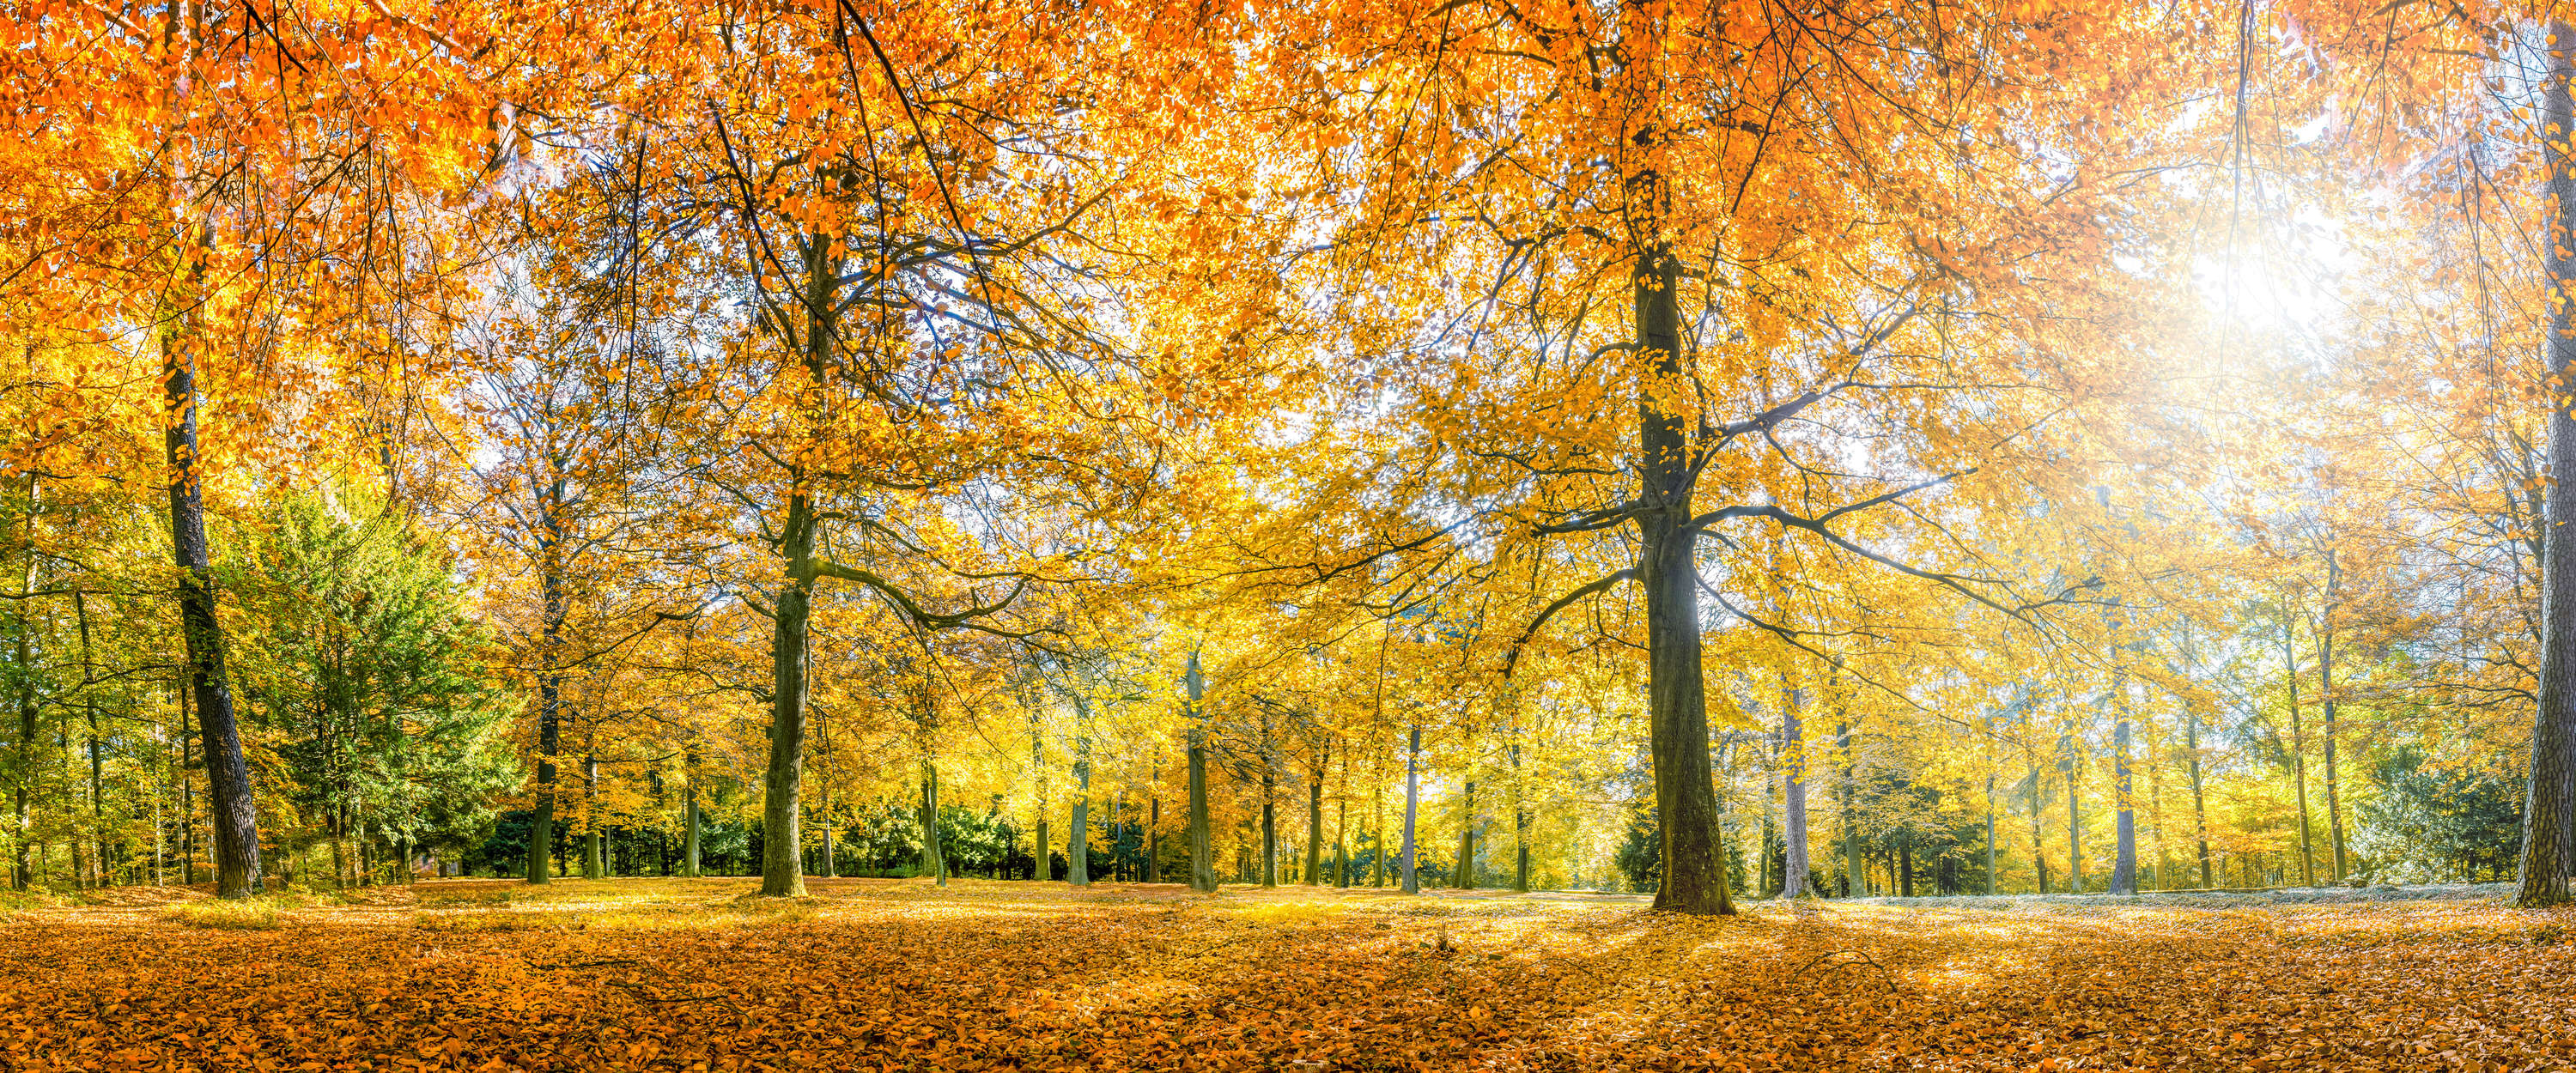             Fotomurali Foresta in autunno con alberi decidui gialli
        